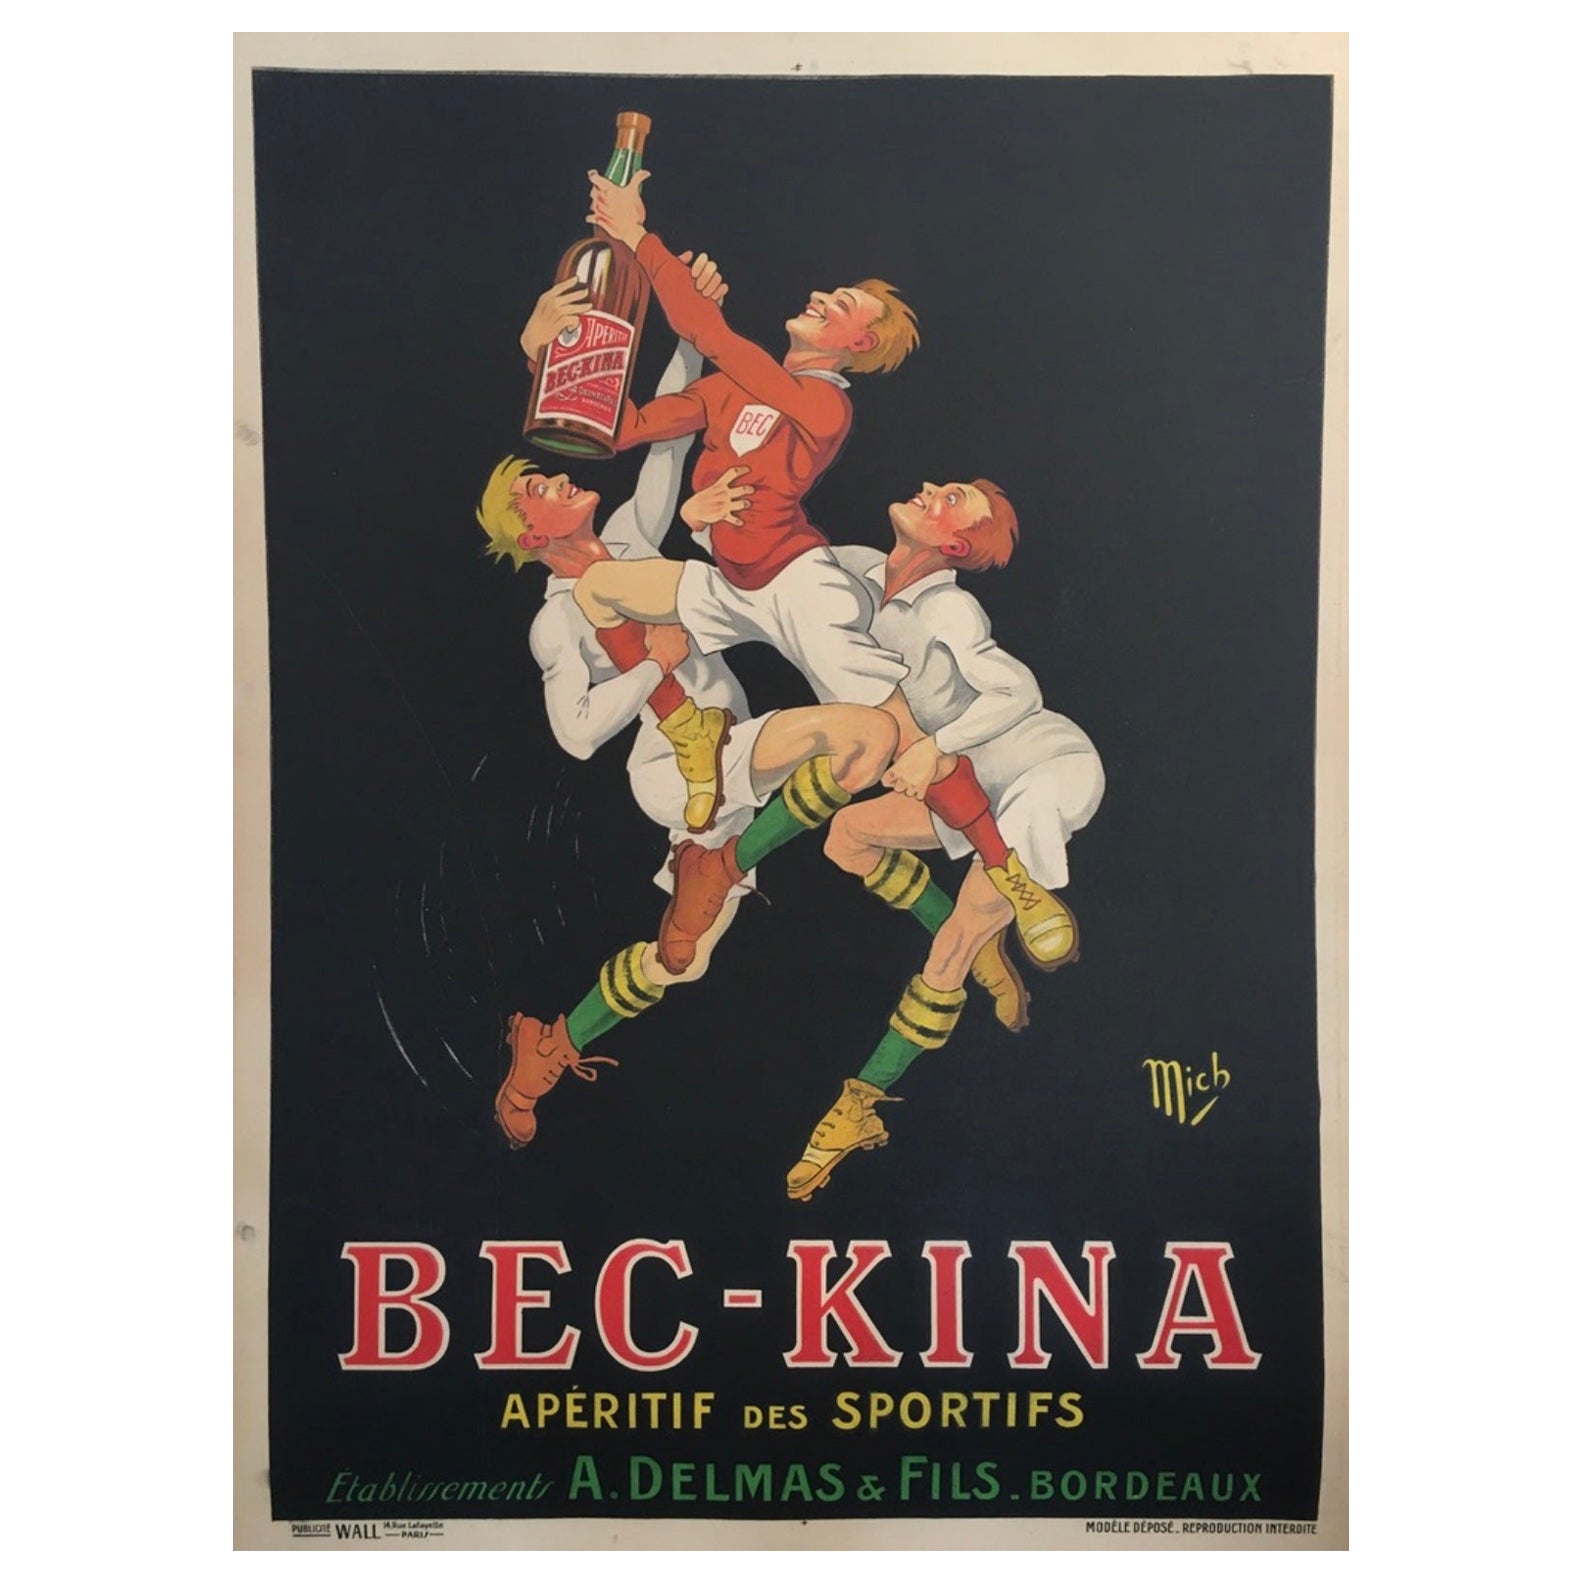 Originales französisches Art Deco Poster, 'Bec Kina', Apéritif 1910 von Mich